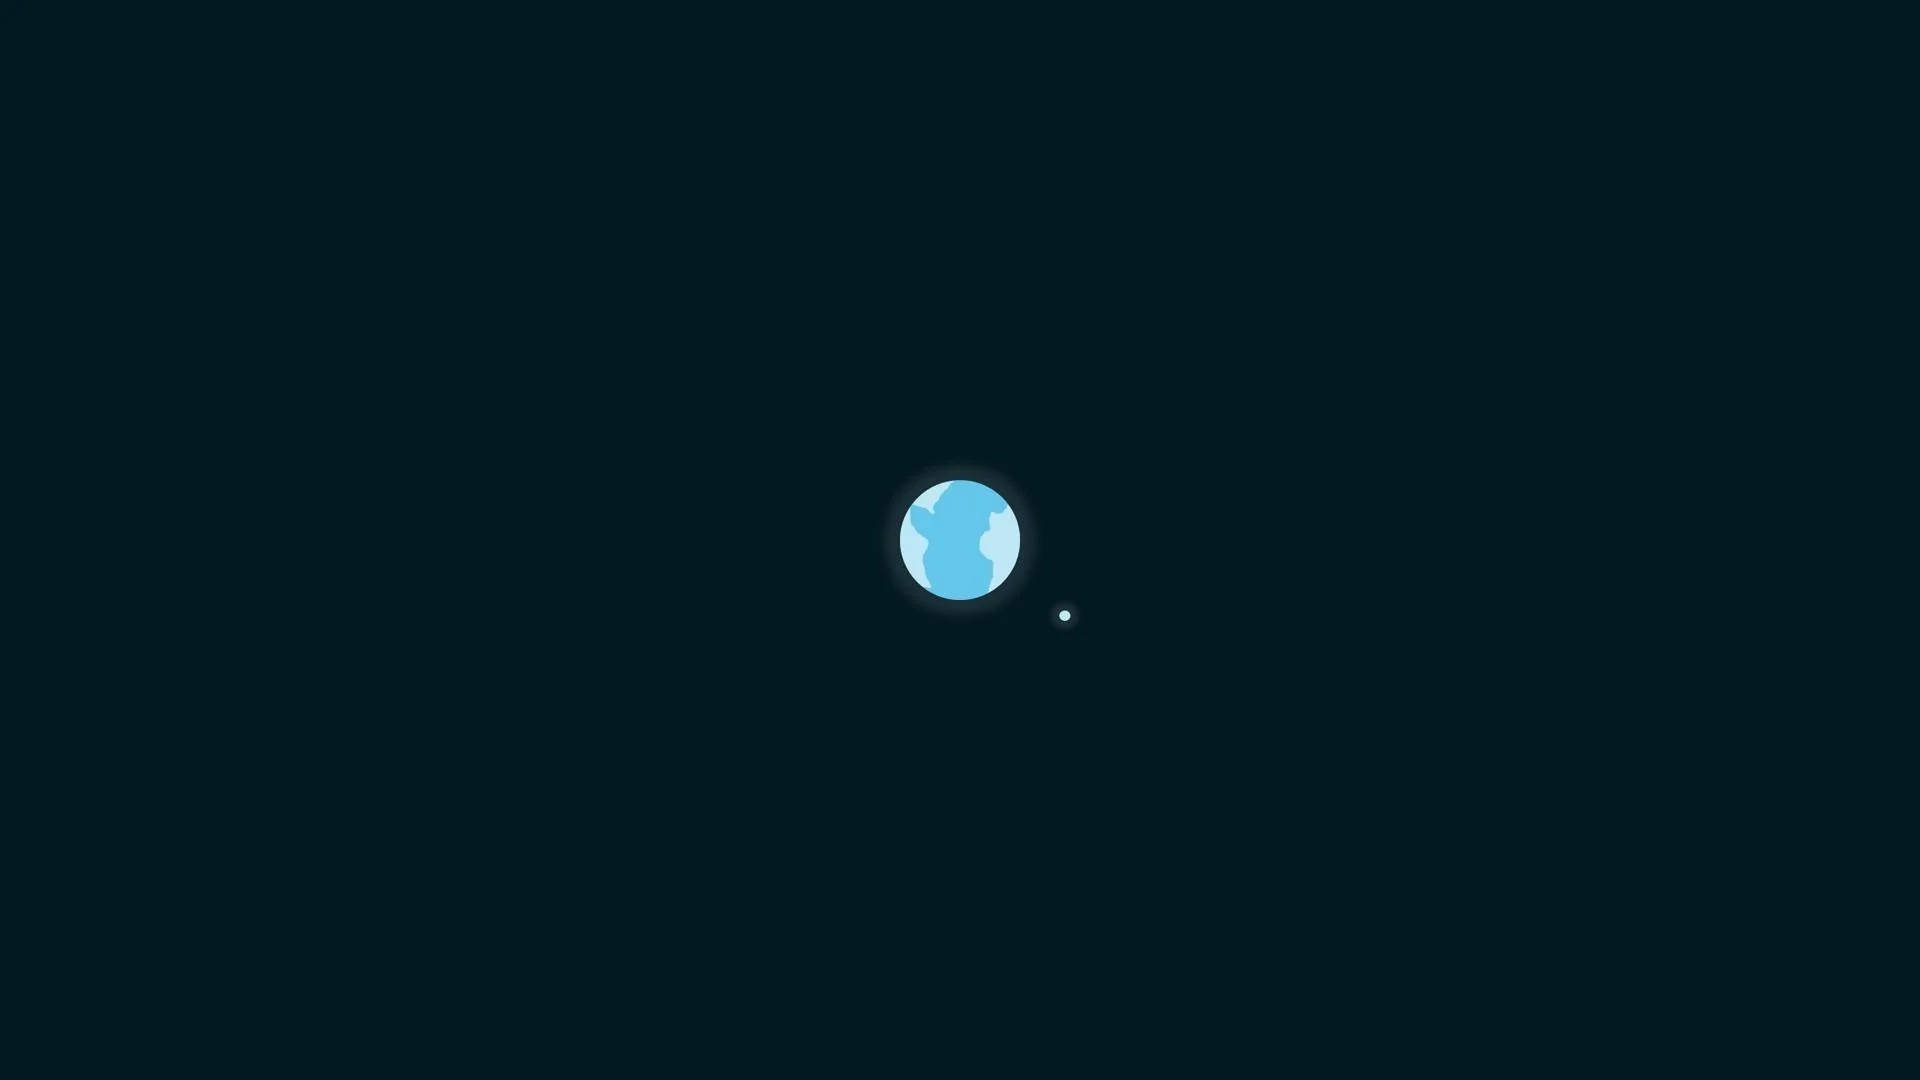 Sencillofondo De Pantalla Hd De La Tierra Y La Luna. Fondo de pantalla